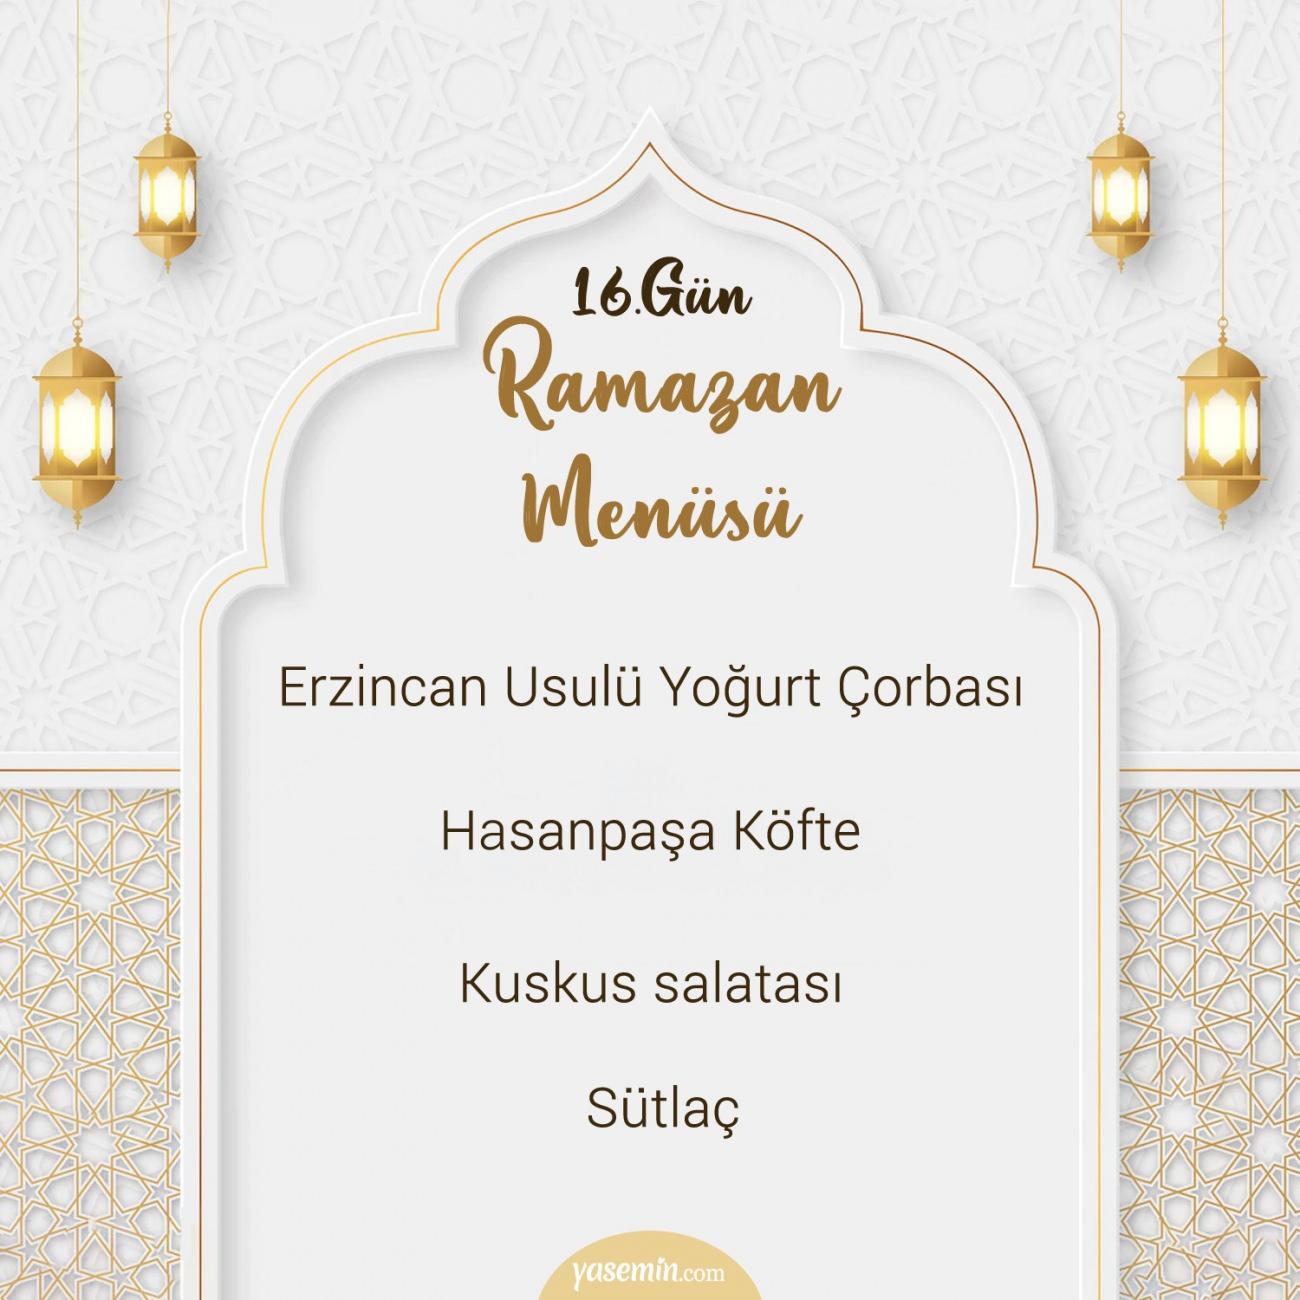 Ramazan menüsü 16